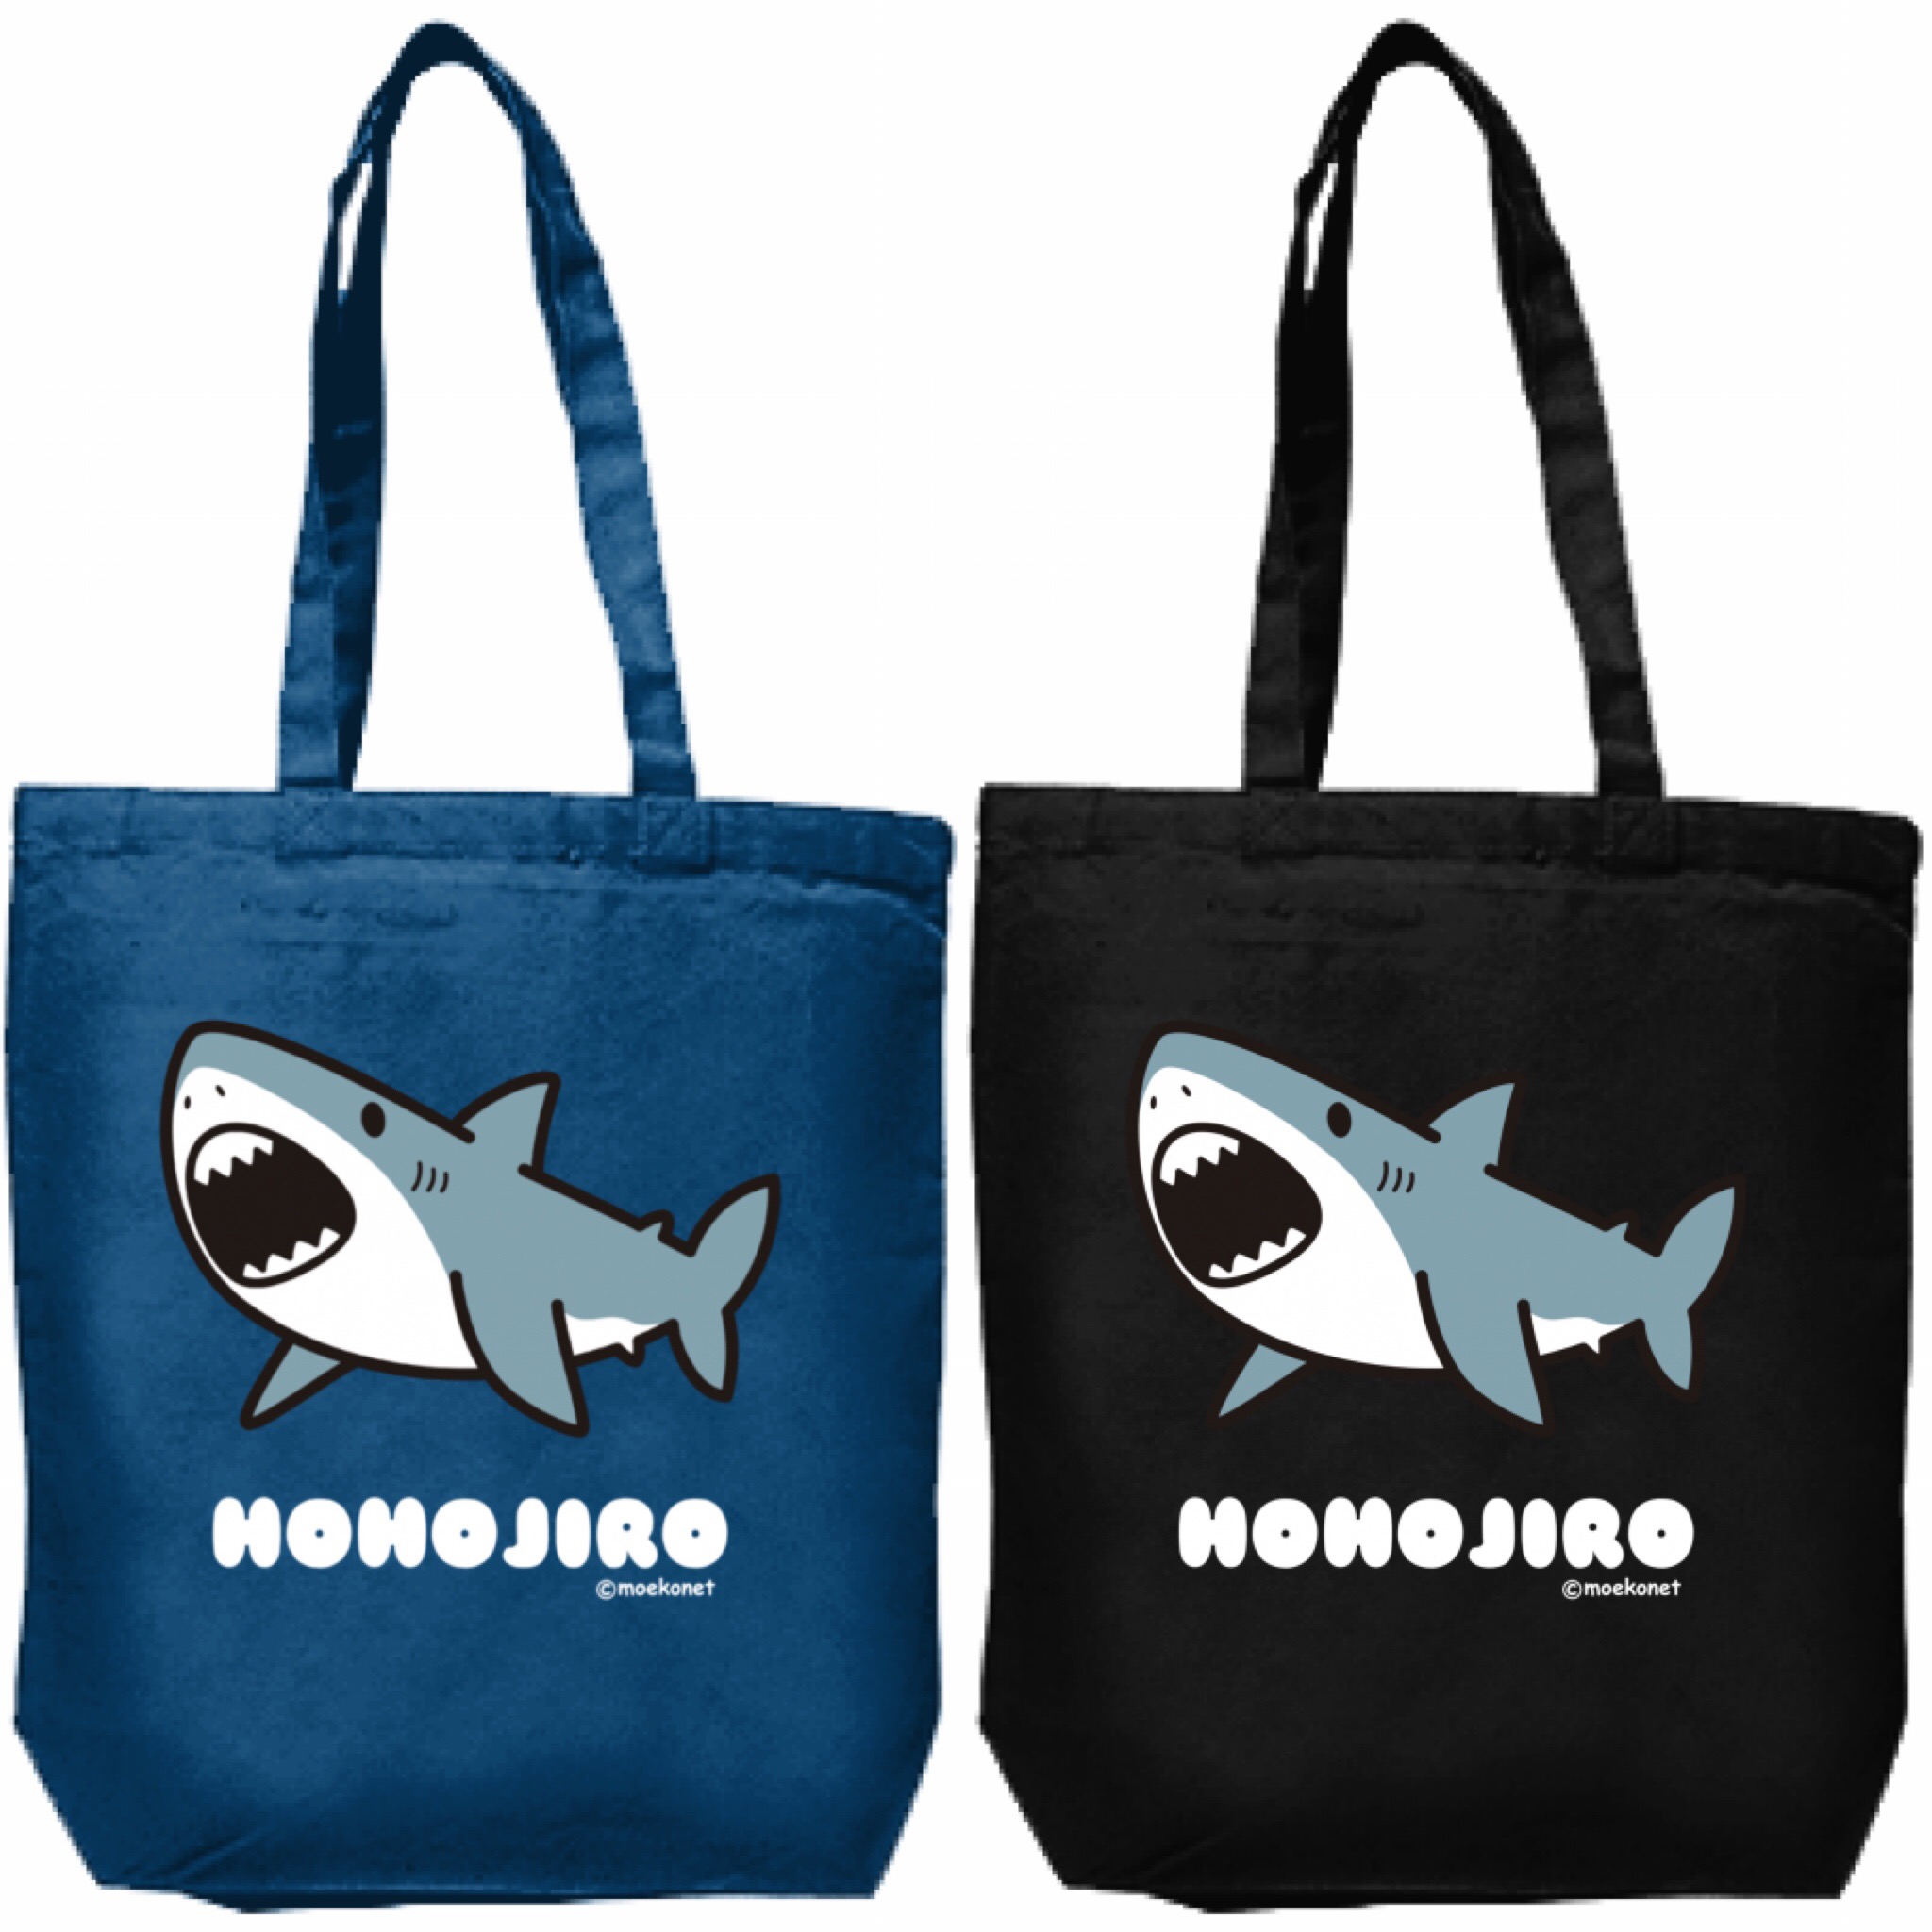 サメのトートバッグ Tシャツ ワンピース販売スタート イラスト制作moekonet